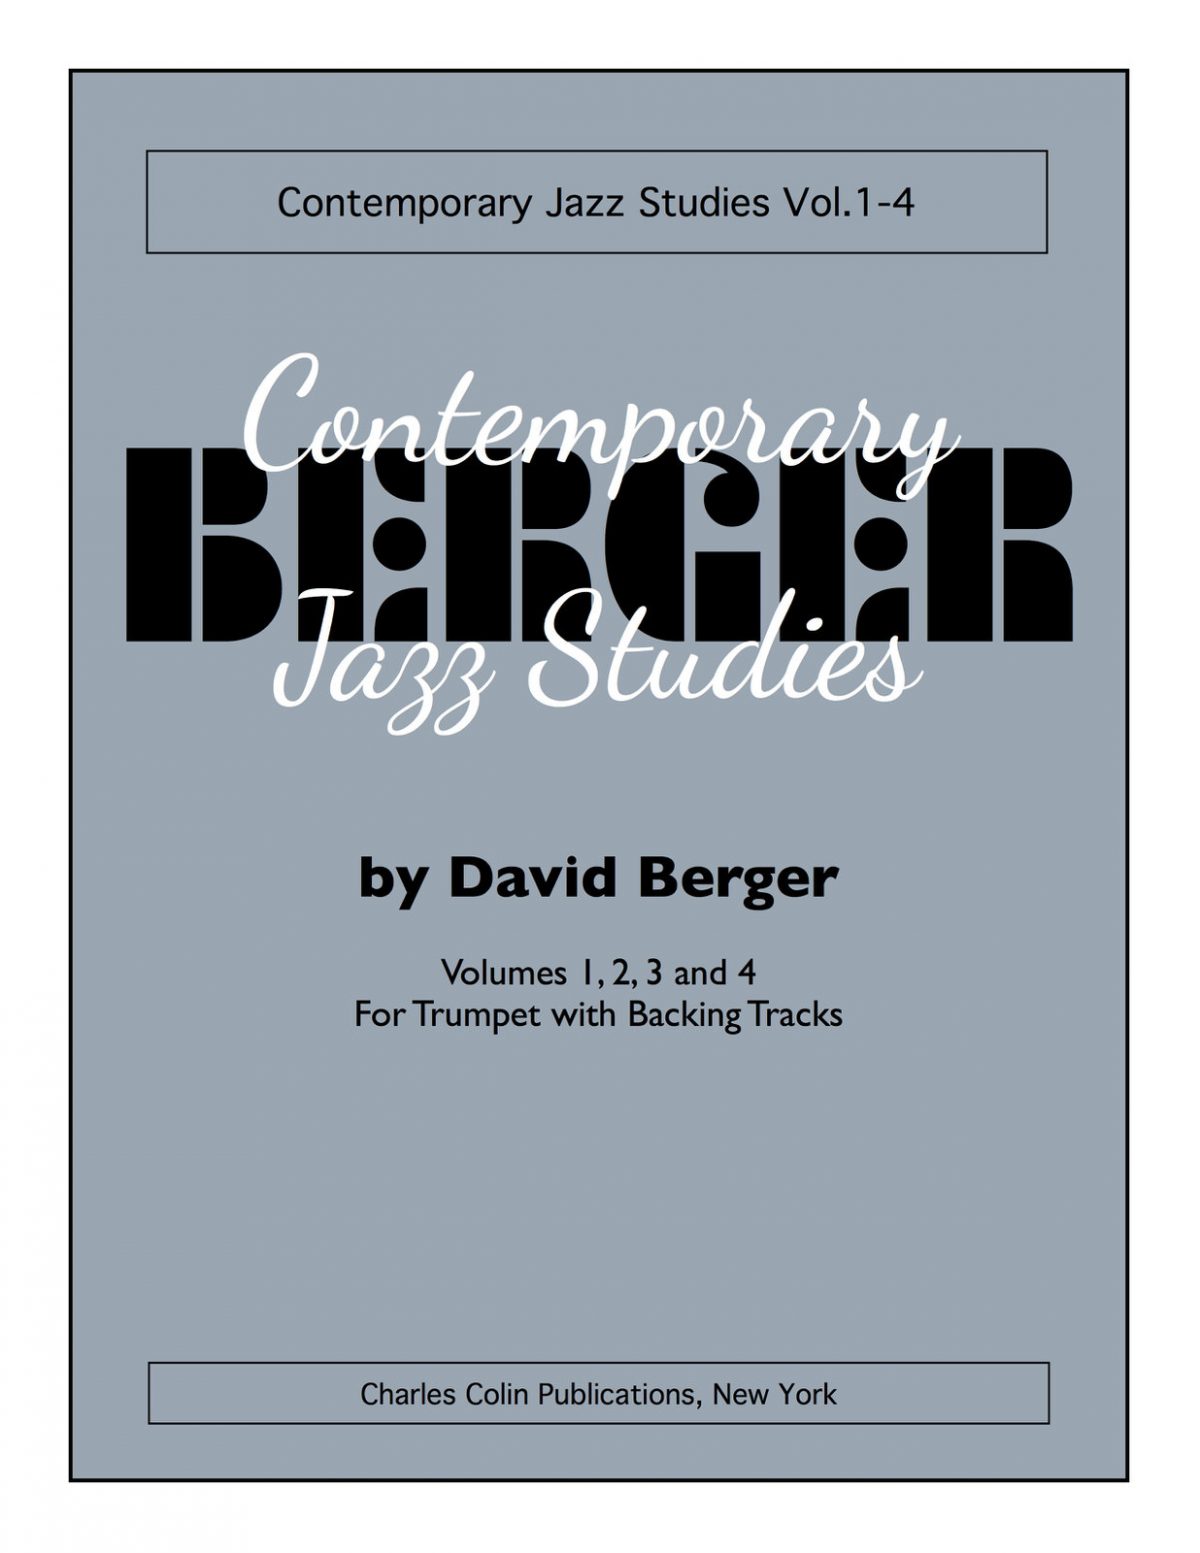 Berger Jazz Studies Complete